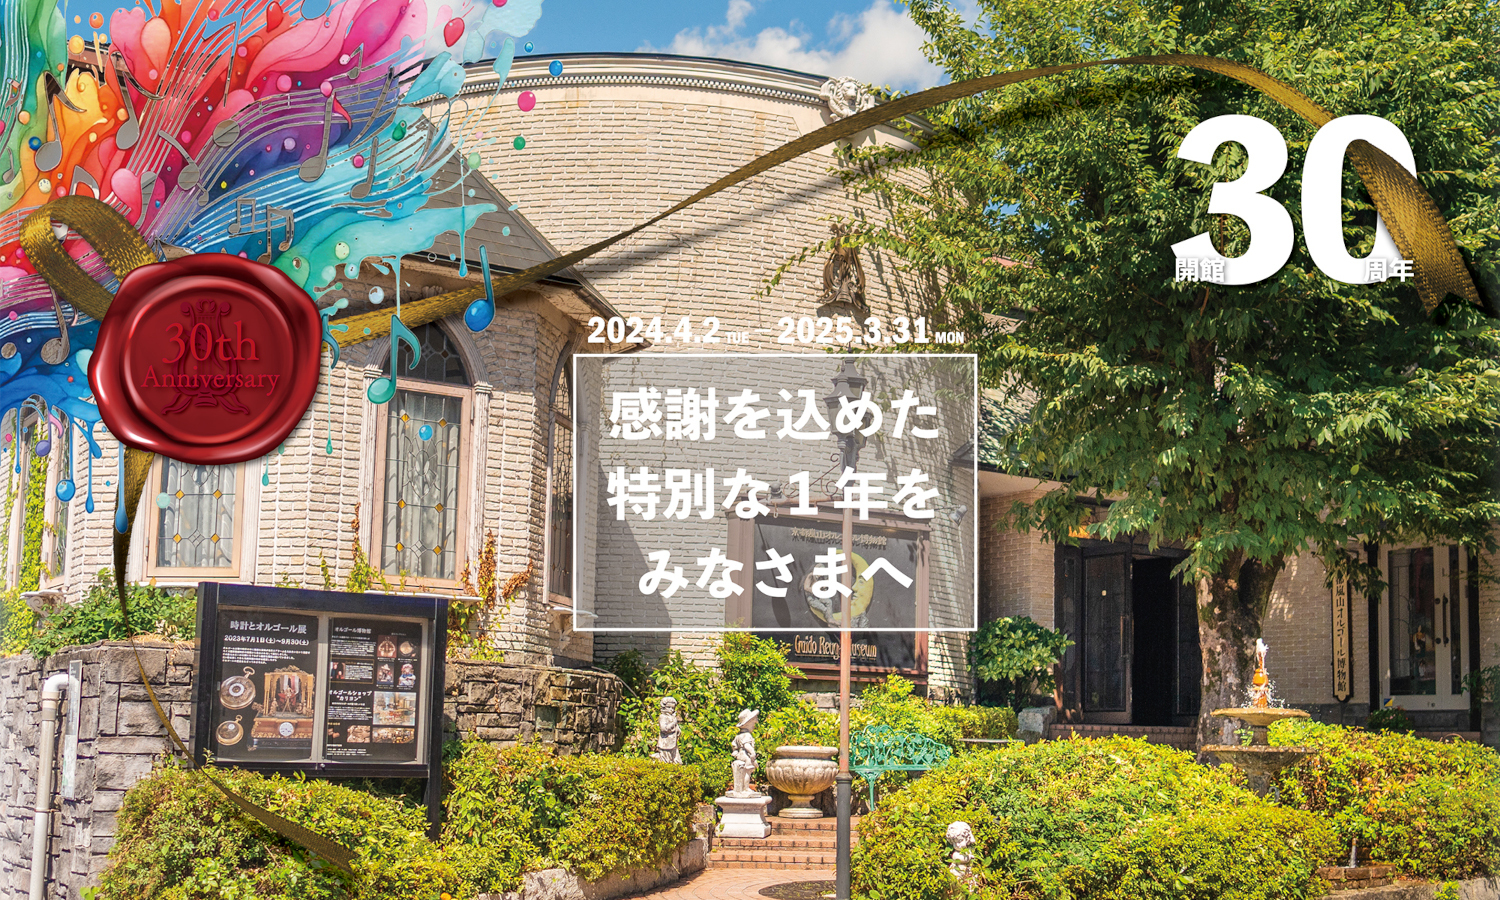 『京都嵐山オルゴール博物館』開館30周年記念　
テーマ別の企画展を2025年3月31日まで開催　
1万3千人以上が感動した
“スタインウェイ自動演奏ピアノ”の再演など